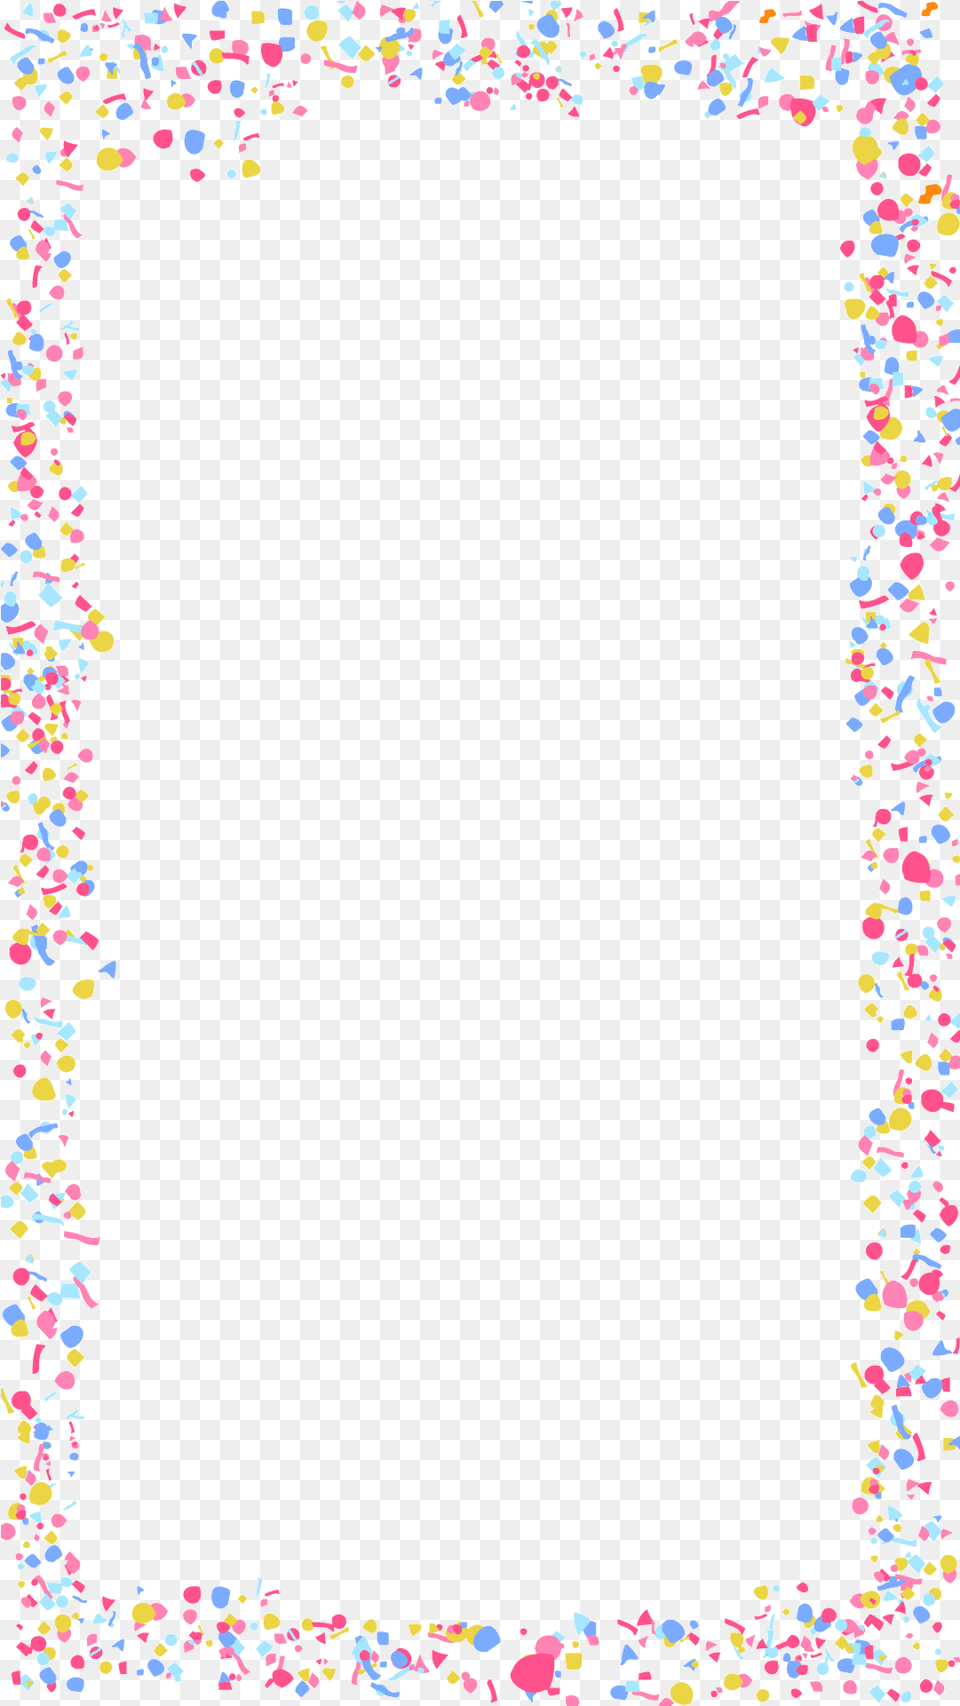 Spiral Border Design, Paper, Confetti Png Image